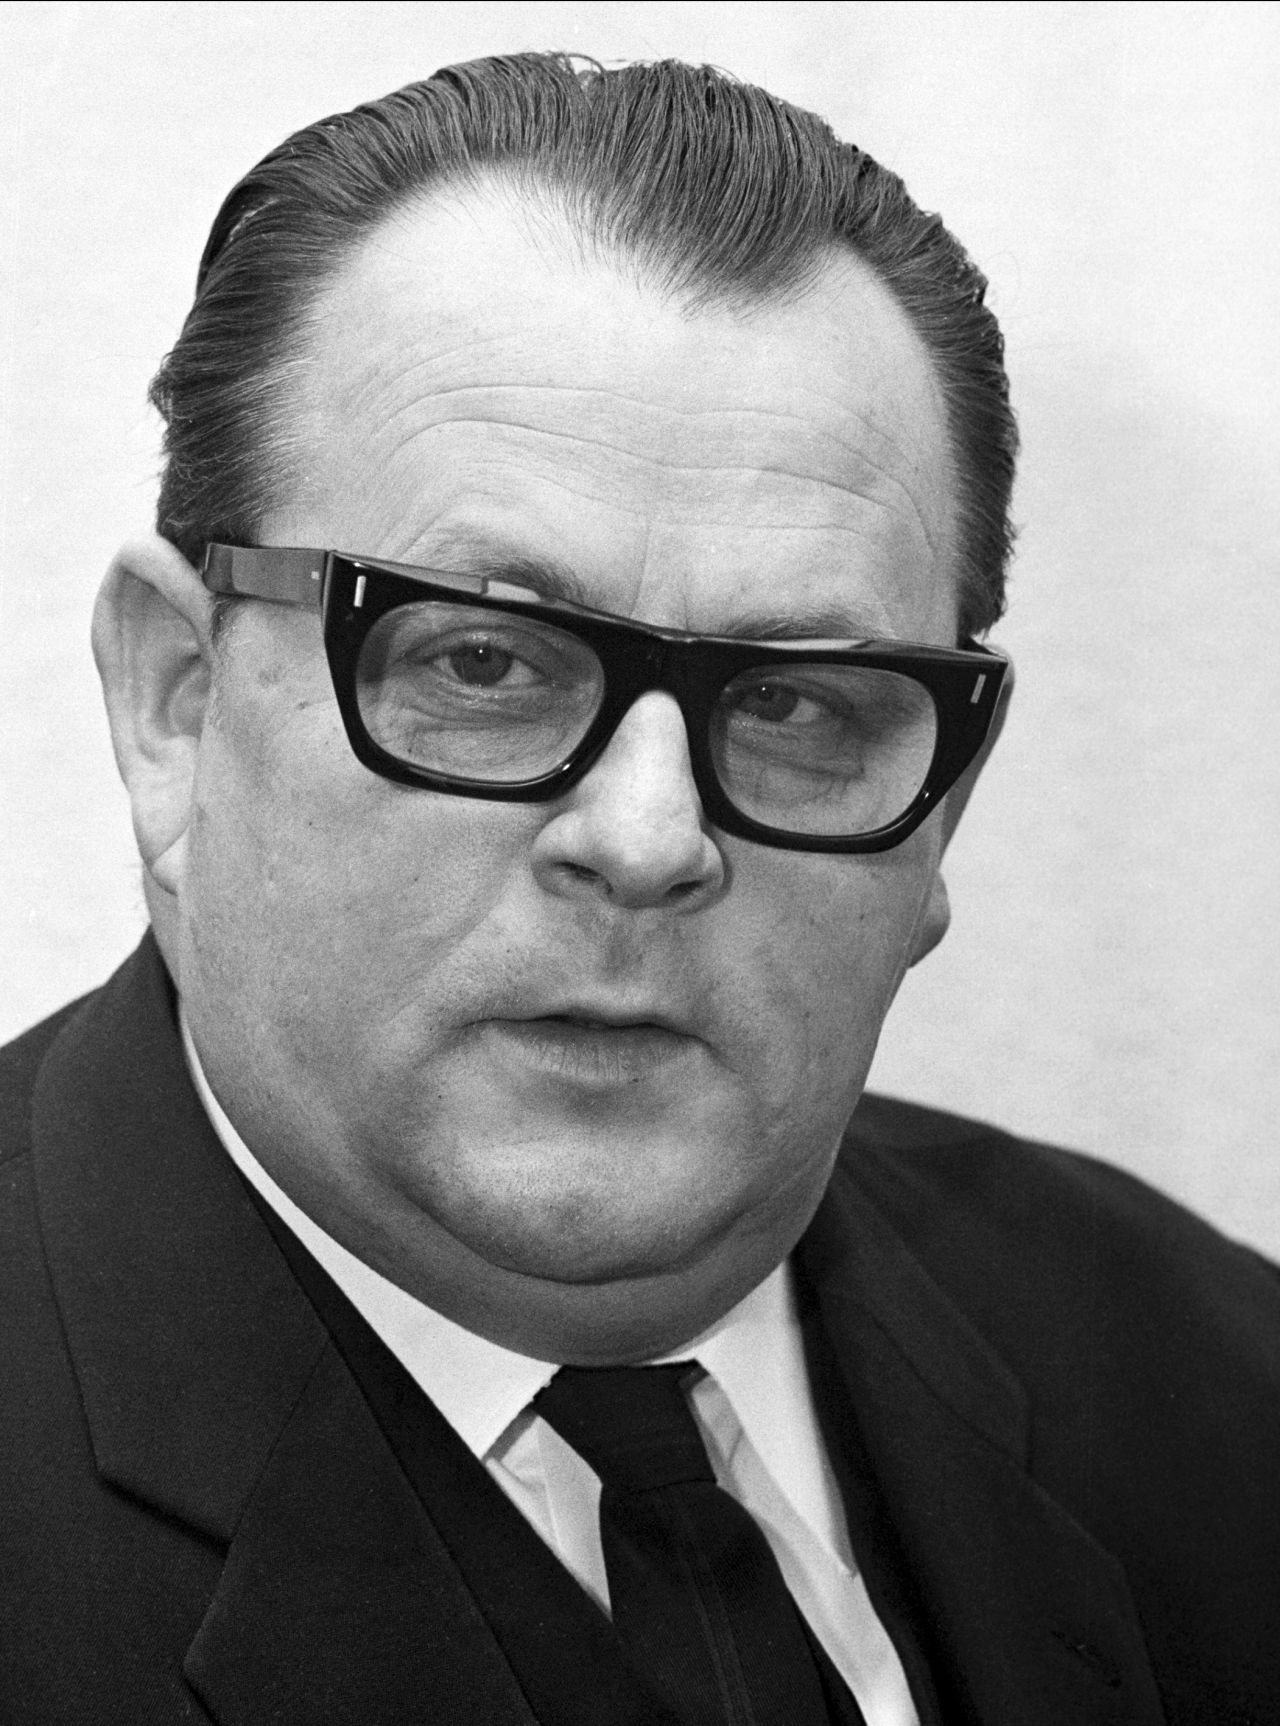 Porträtaufnahme von Hans-Jürgen Wischnewski, Bundesminister für wirtschaftliche Zusammenarbeit (1966-1968)